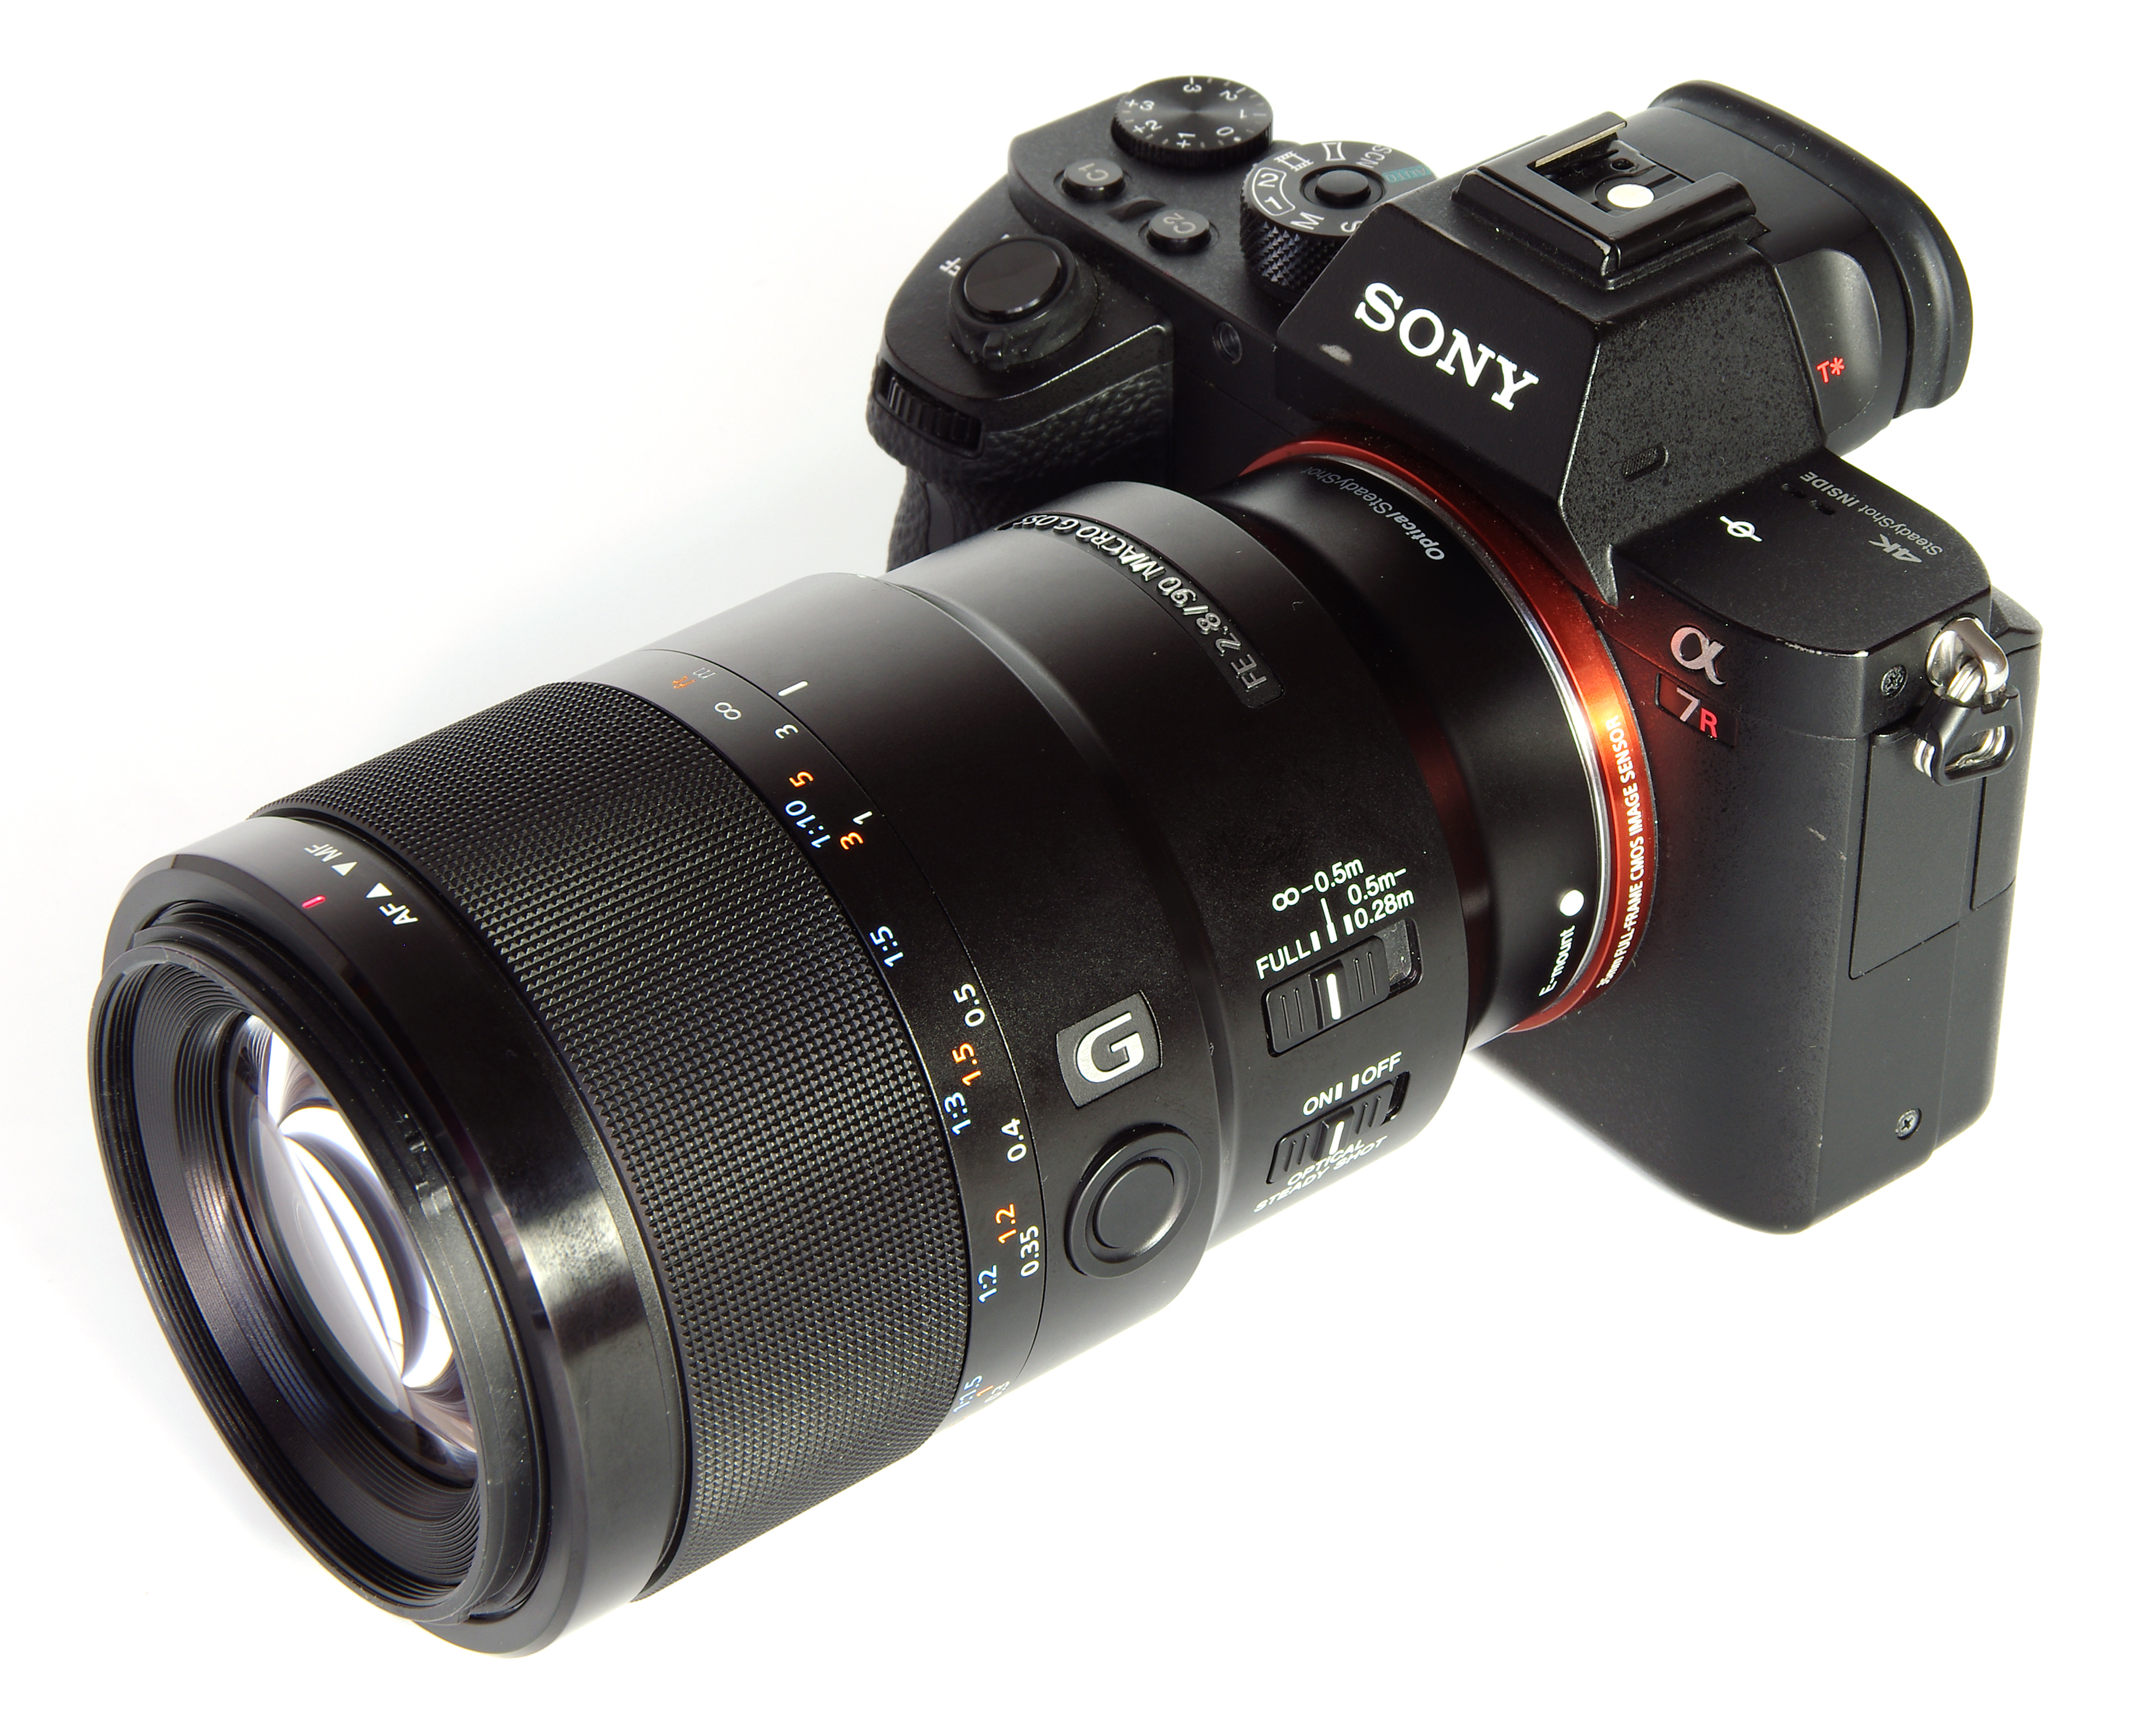 Sony FE 90mm f/2.8 Macro G OSS (SEL90M28G)